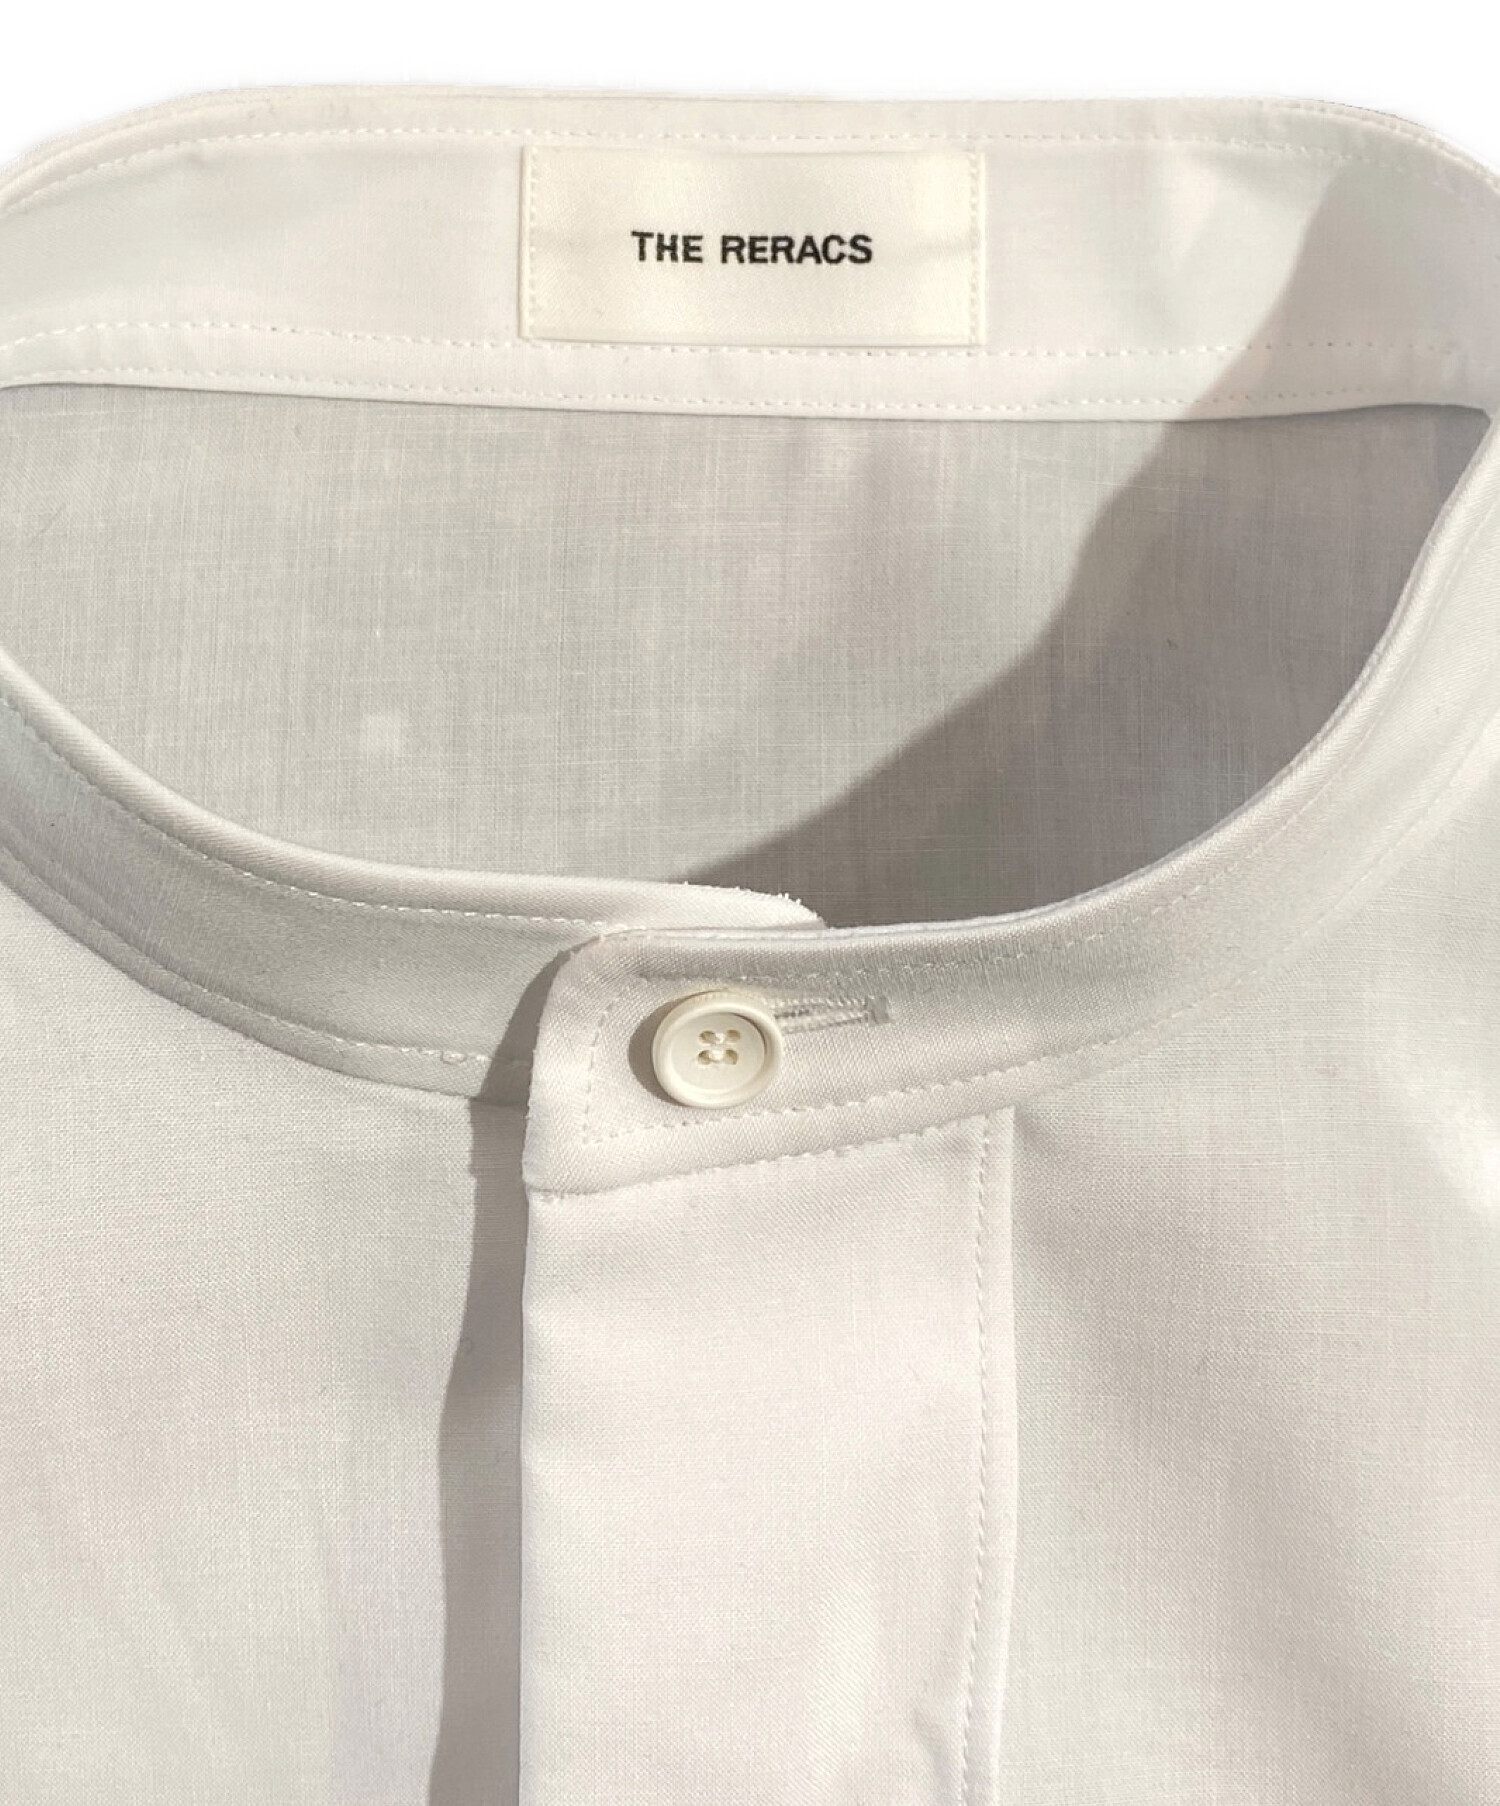 ザ・リラクス(THE RERACS)プラケットシャツ　サイズ46